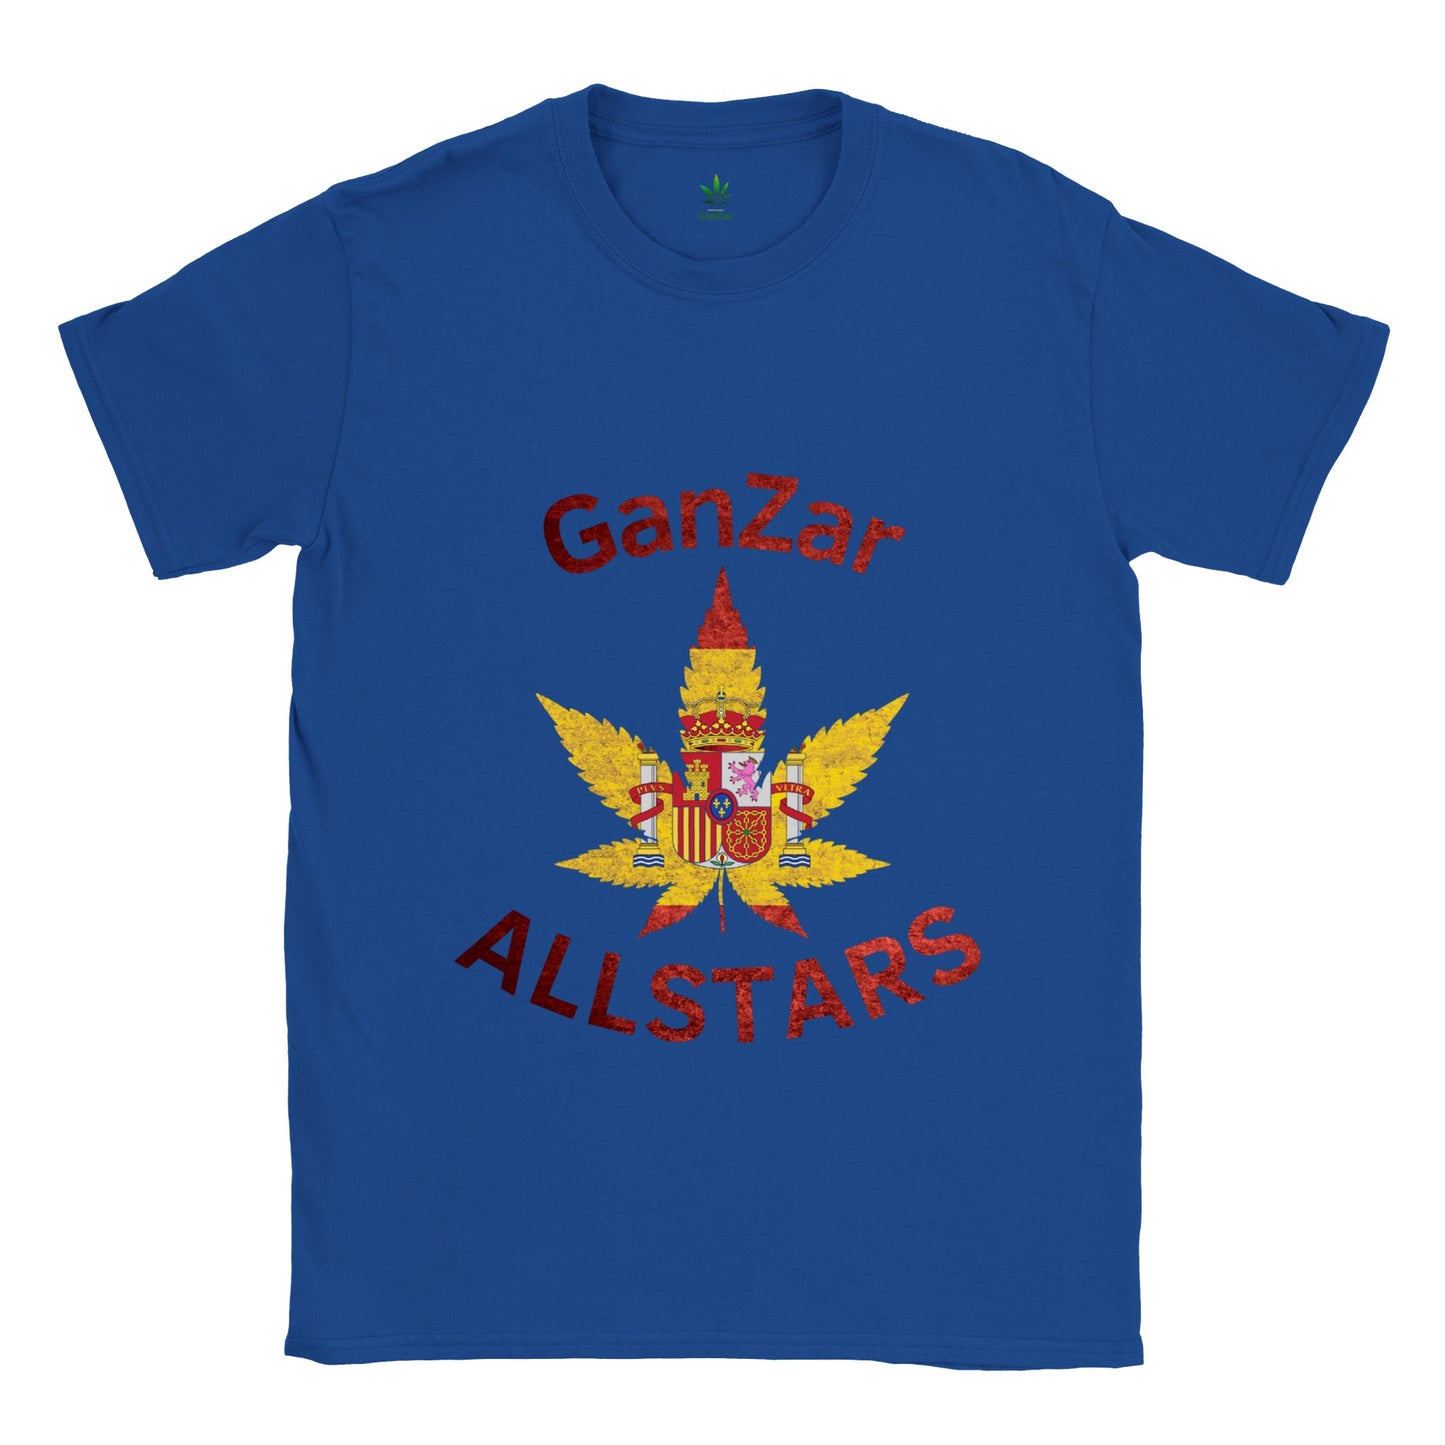 Spain GanZar Allstars Unisex T-Shirt